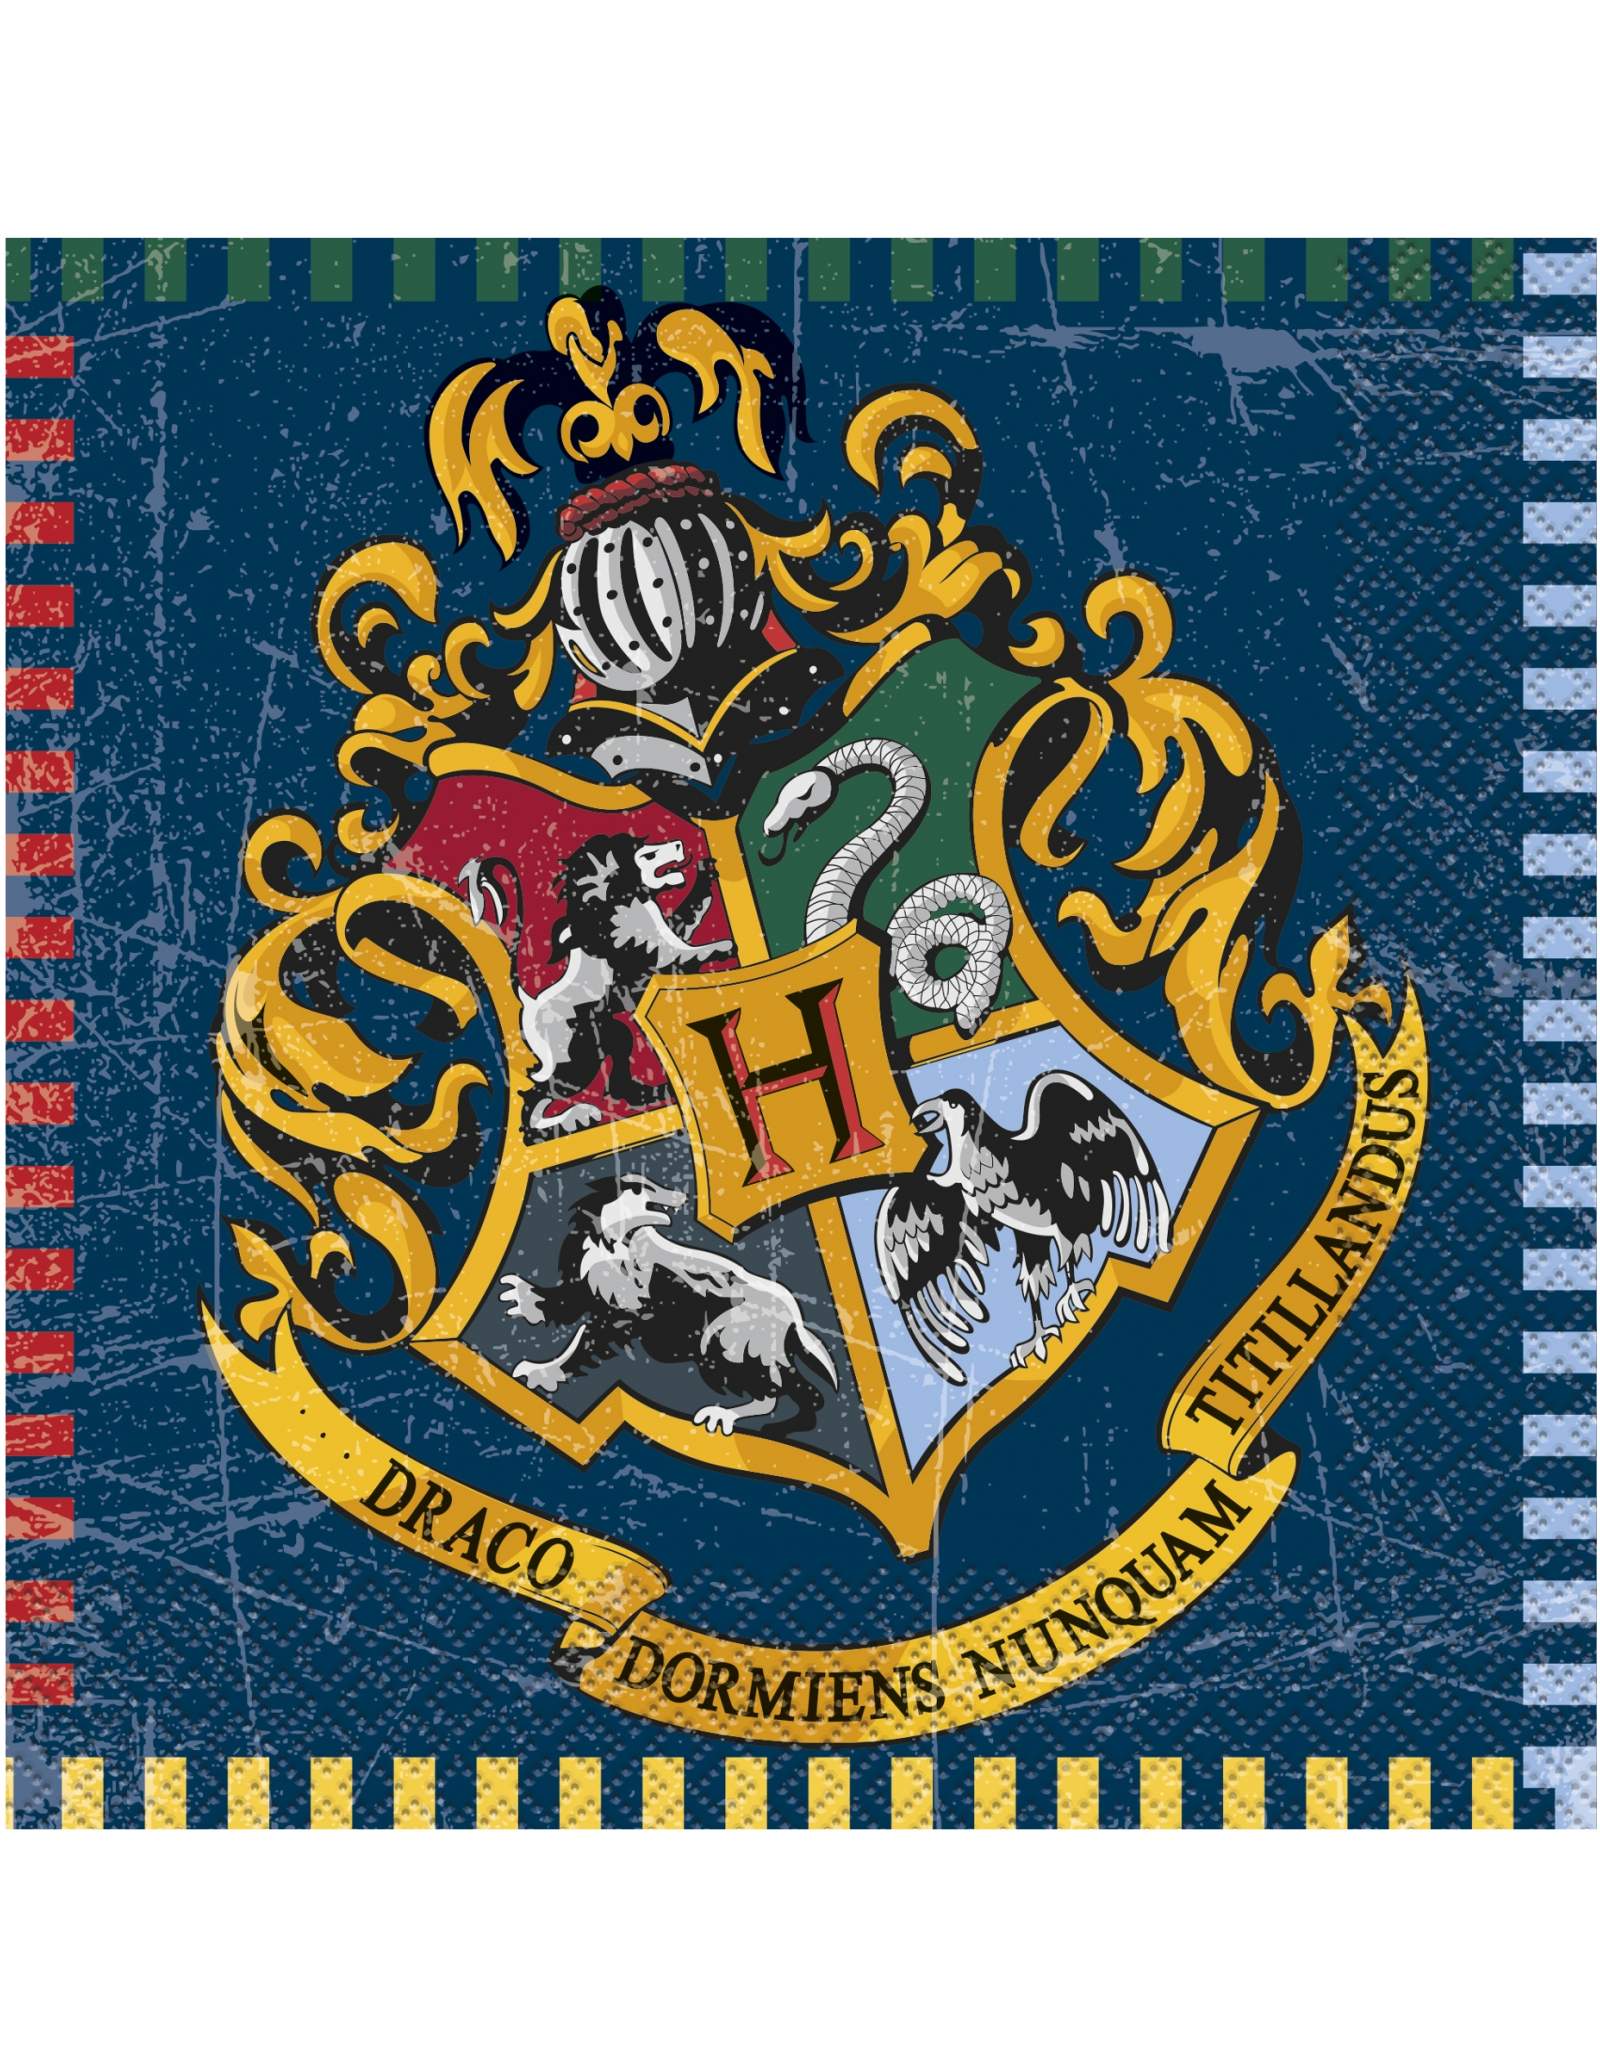 Kit de decoration anniversaire - Anniversaire Harry Potter